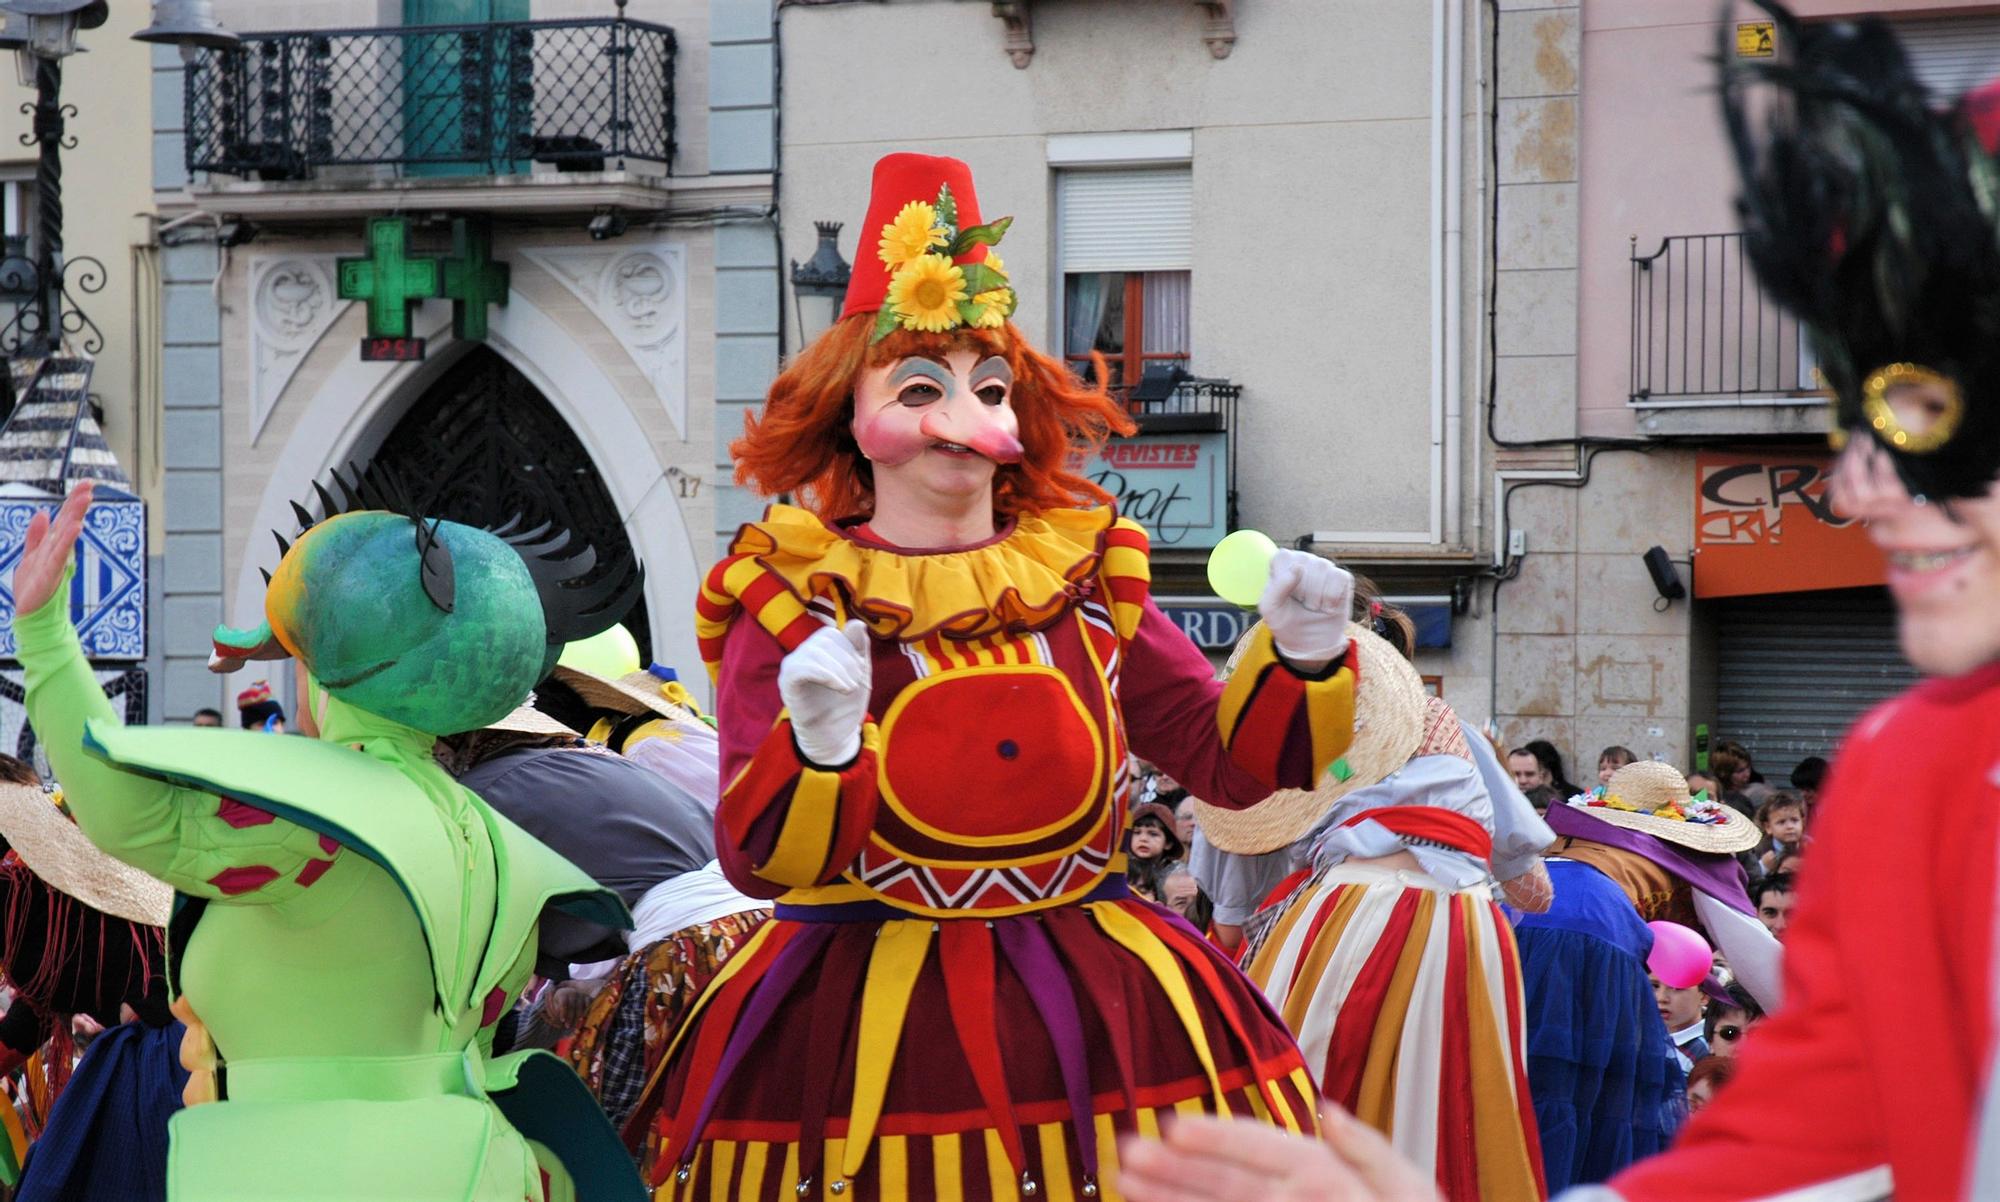 EXPOSICIÓN  Carnaval de Badajoz - VIRAL